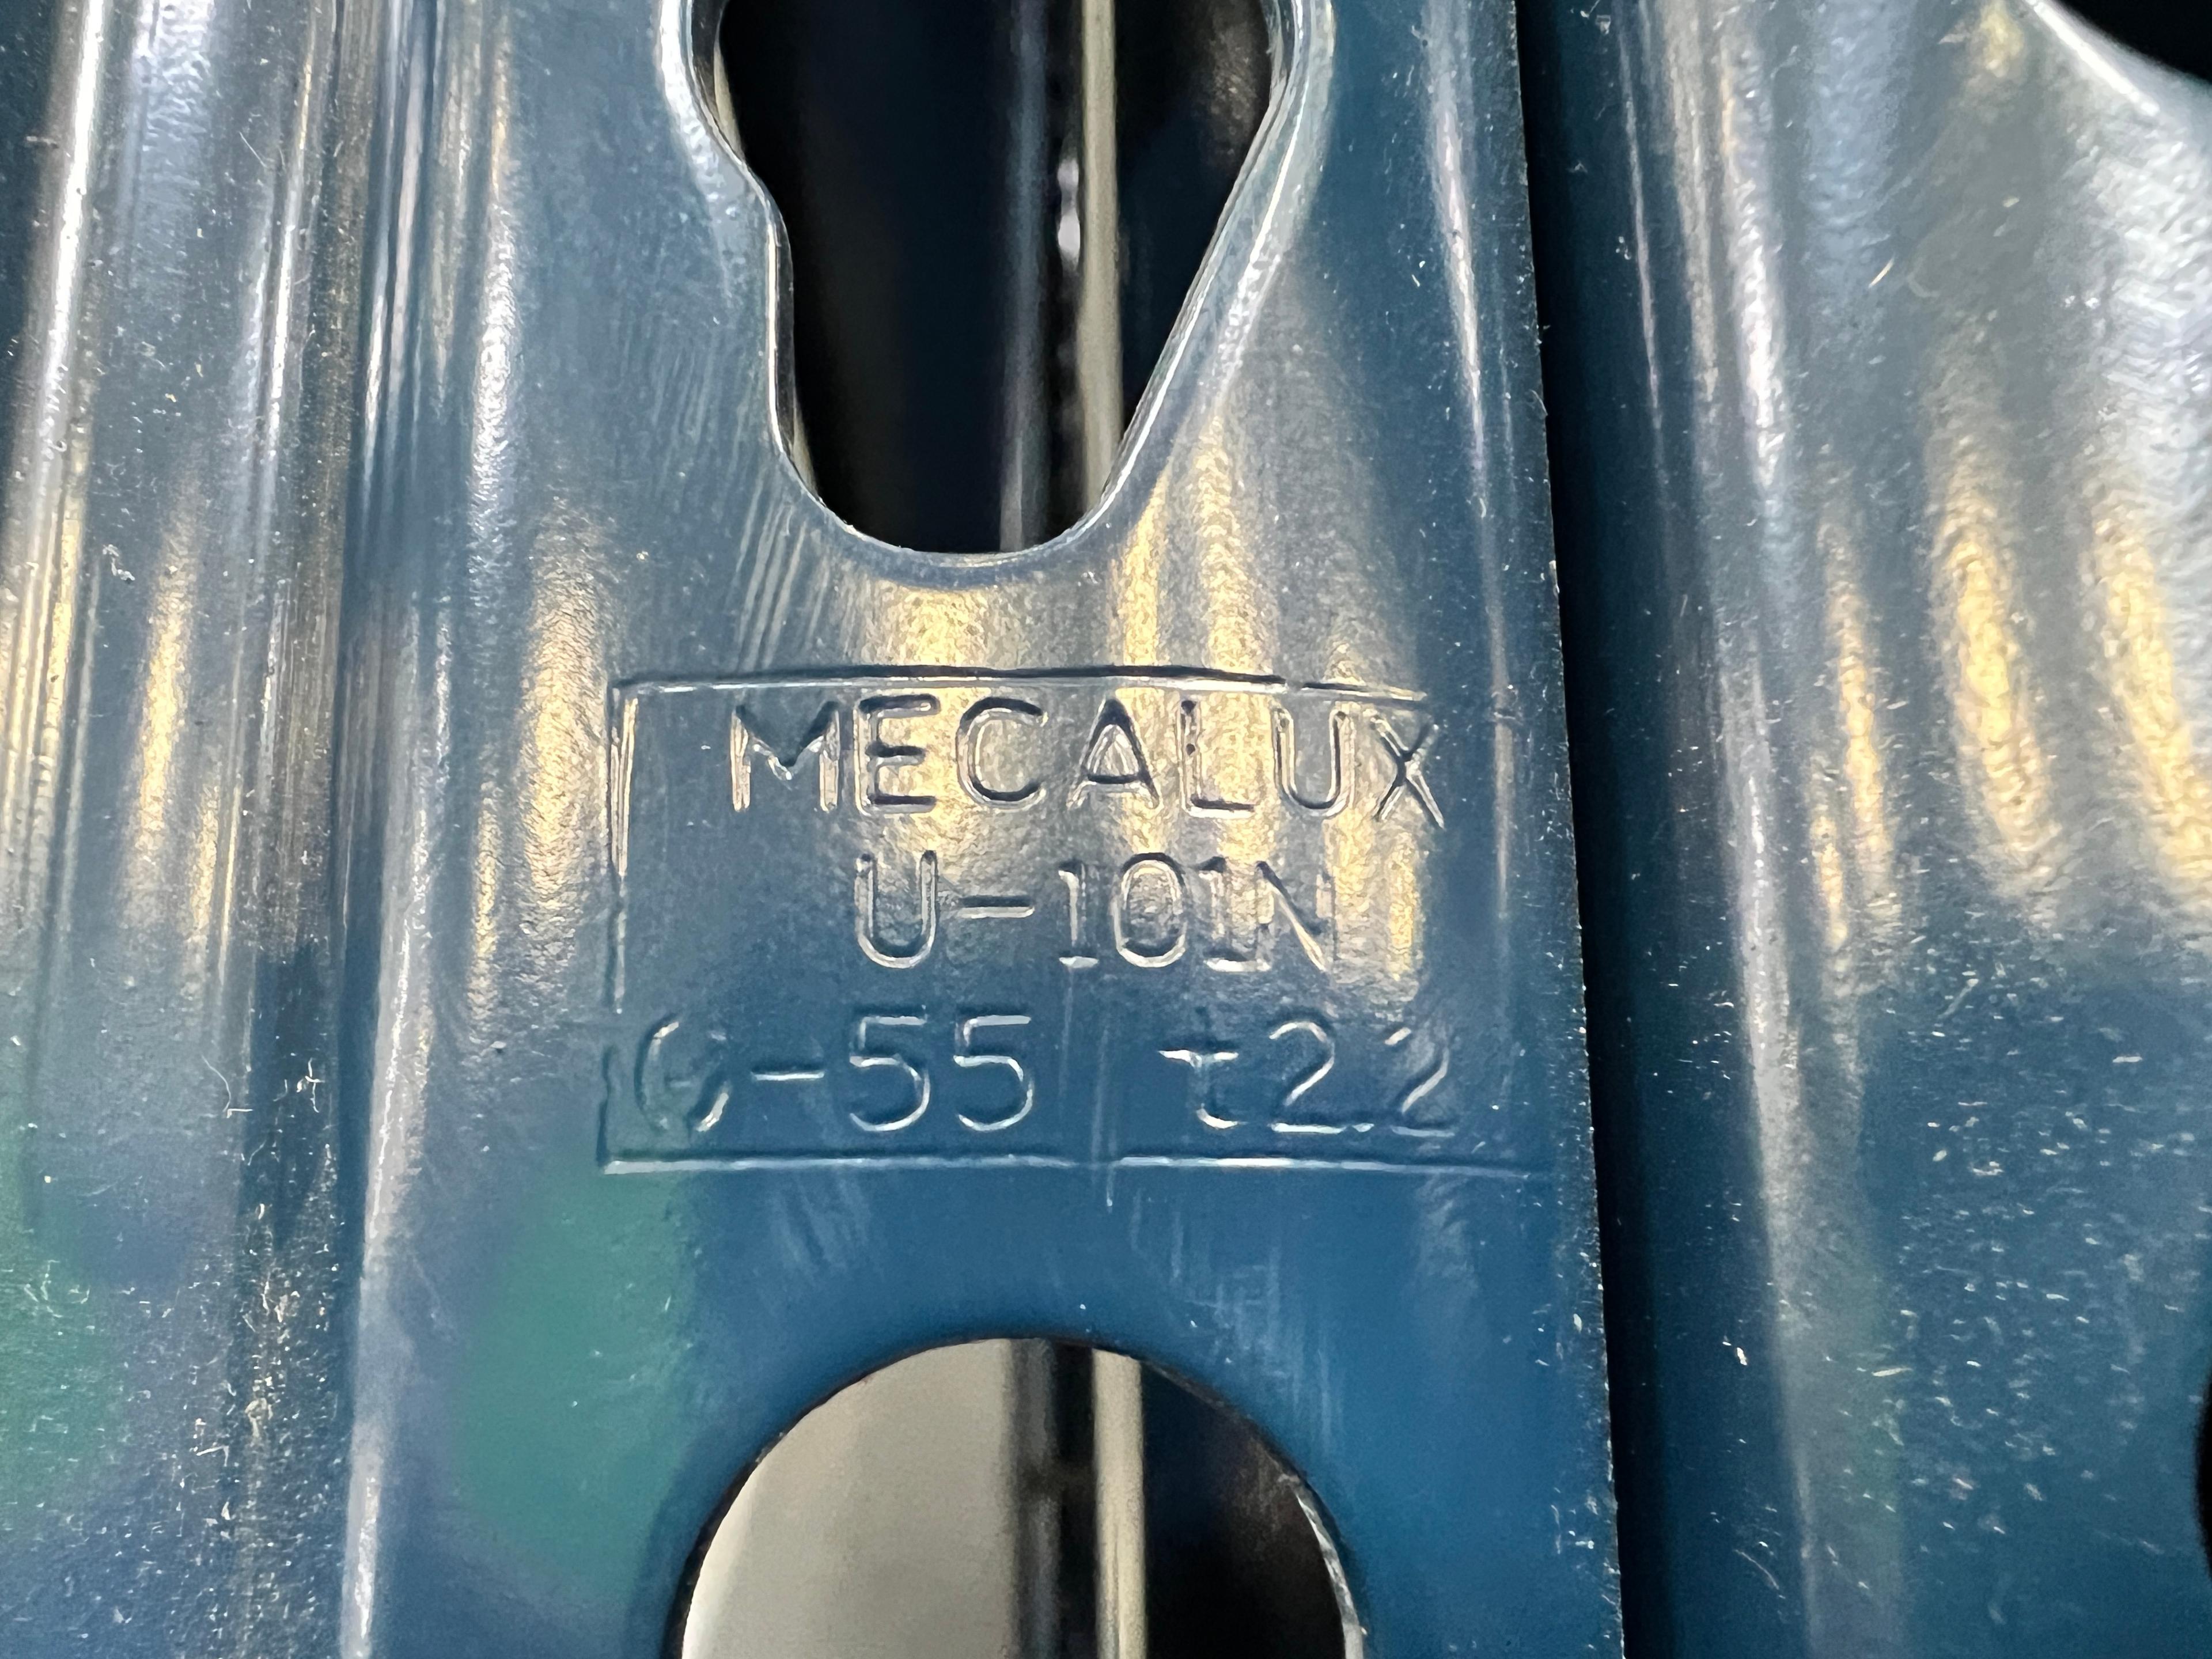 Mecalux Tear Drop Pallet Rack Upright Frame 42" X 28'